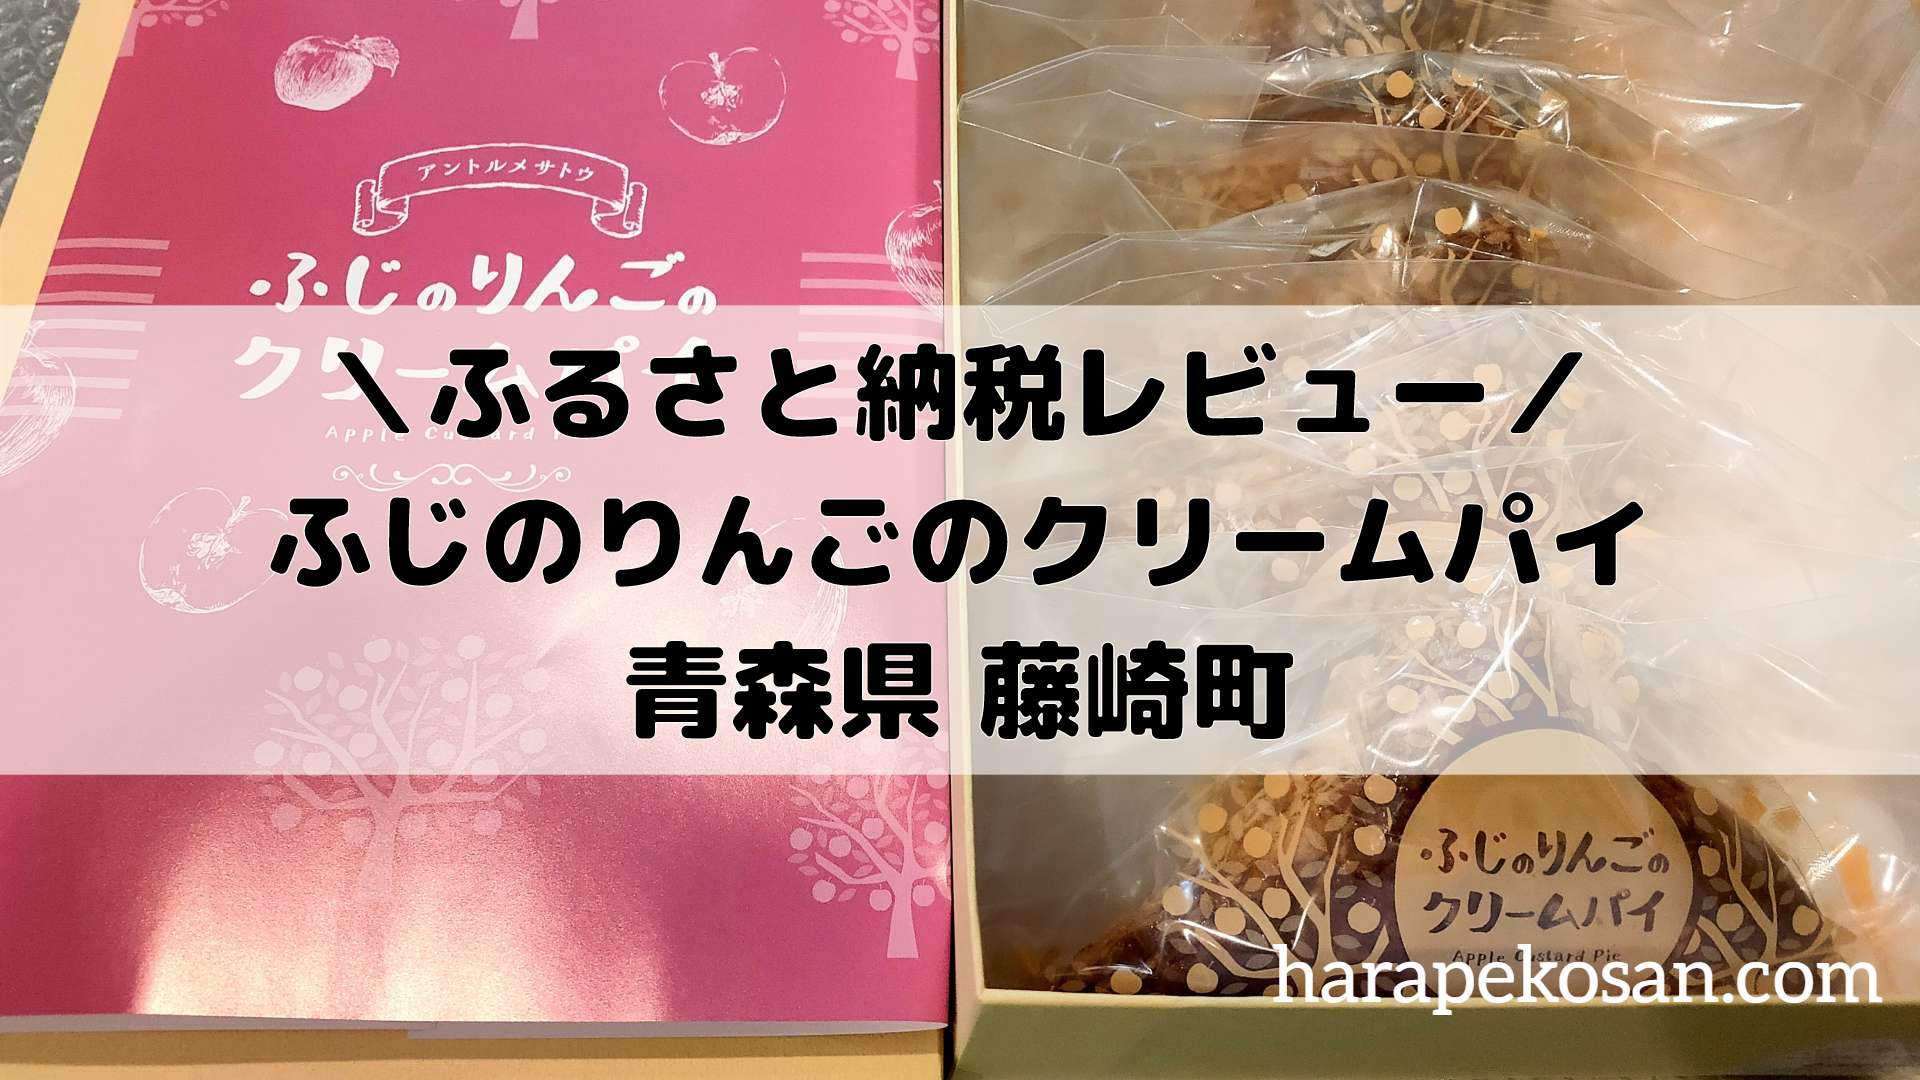 ふるさと納税 青森県藤崎町ふじのりんごのクリームパイのレビュー